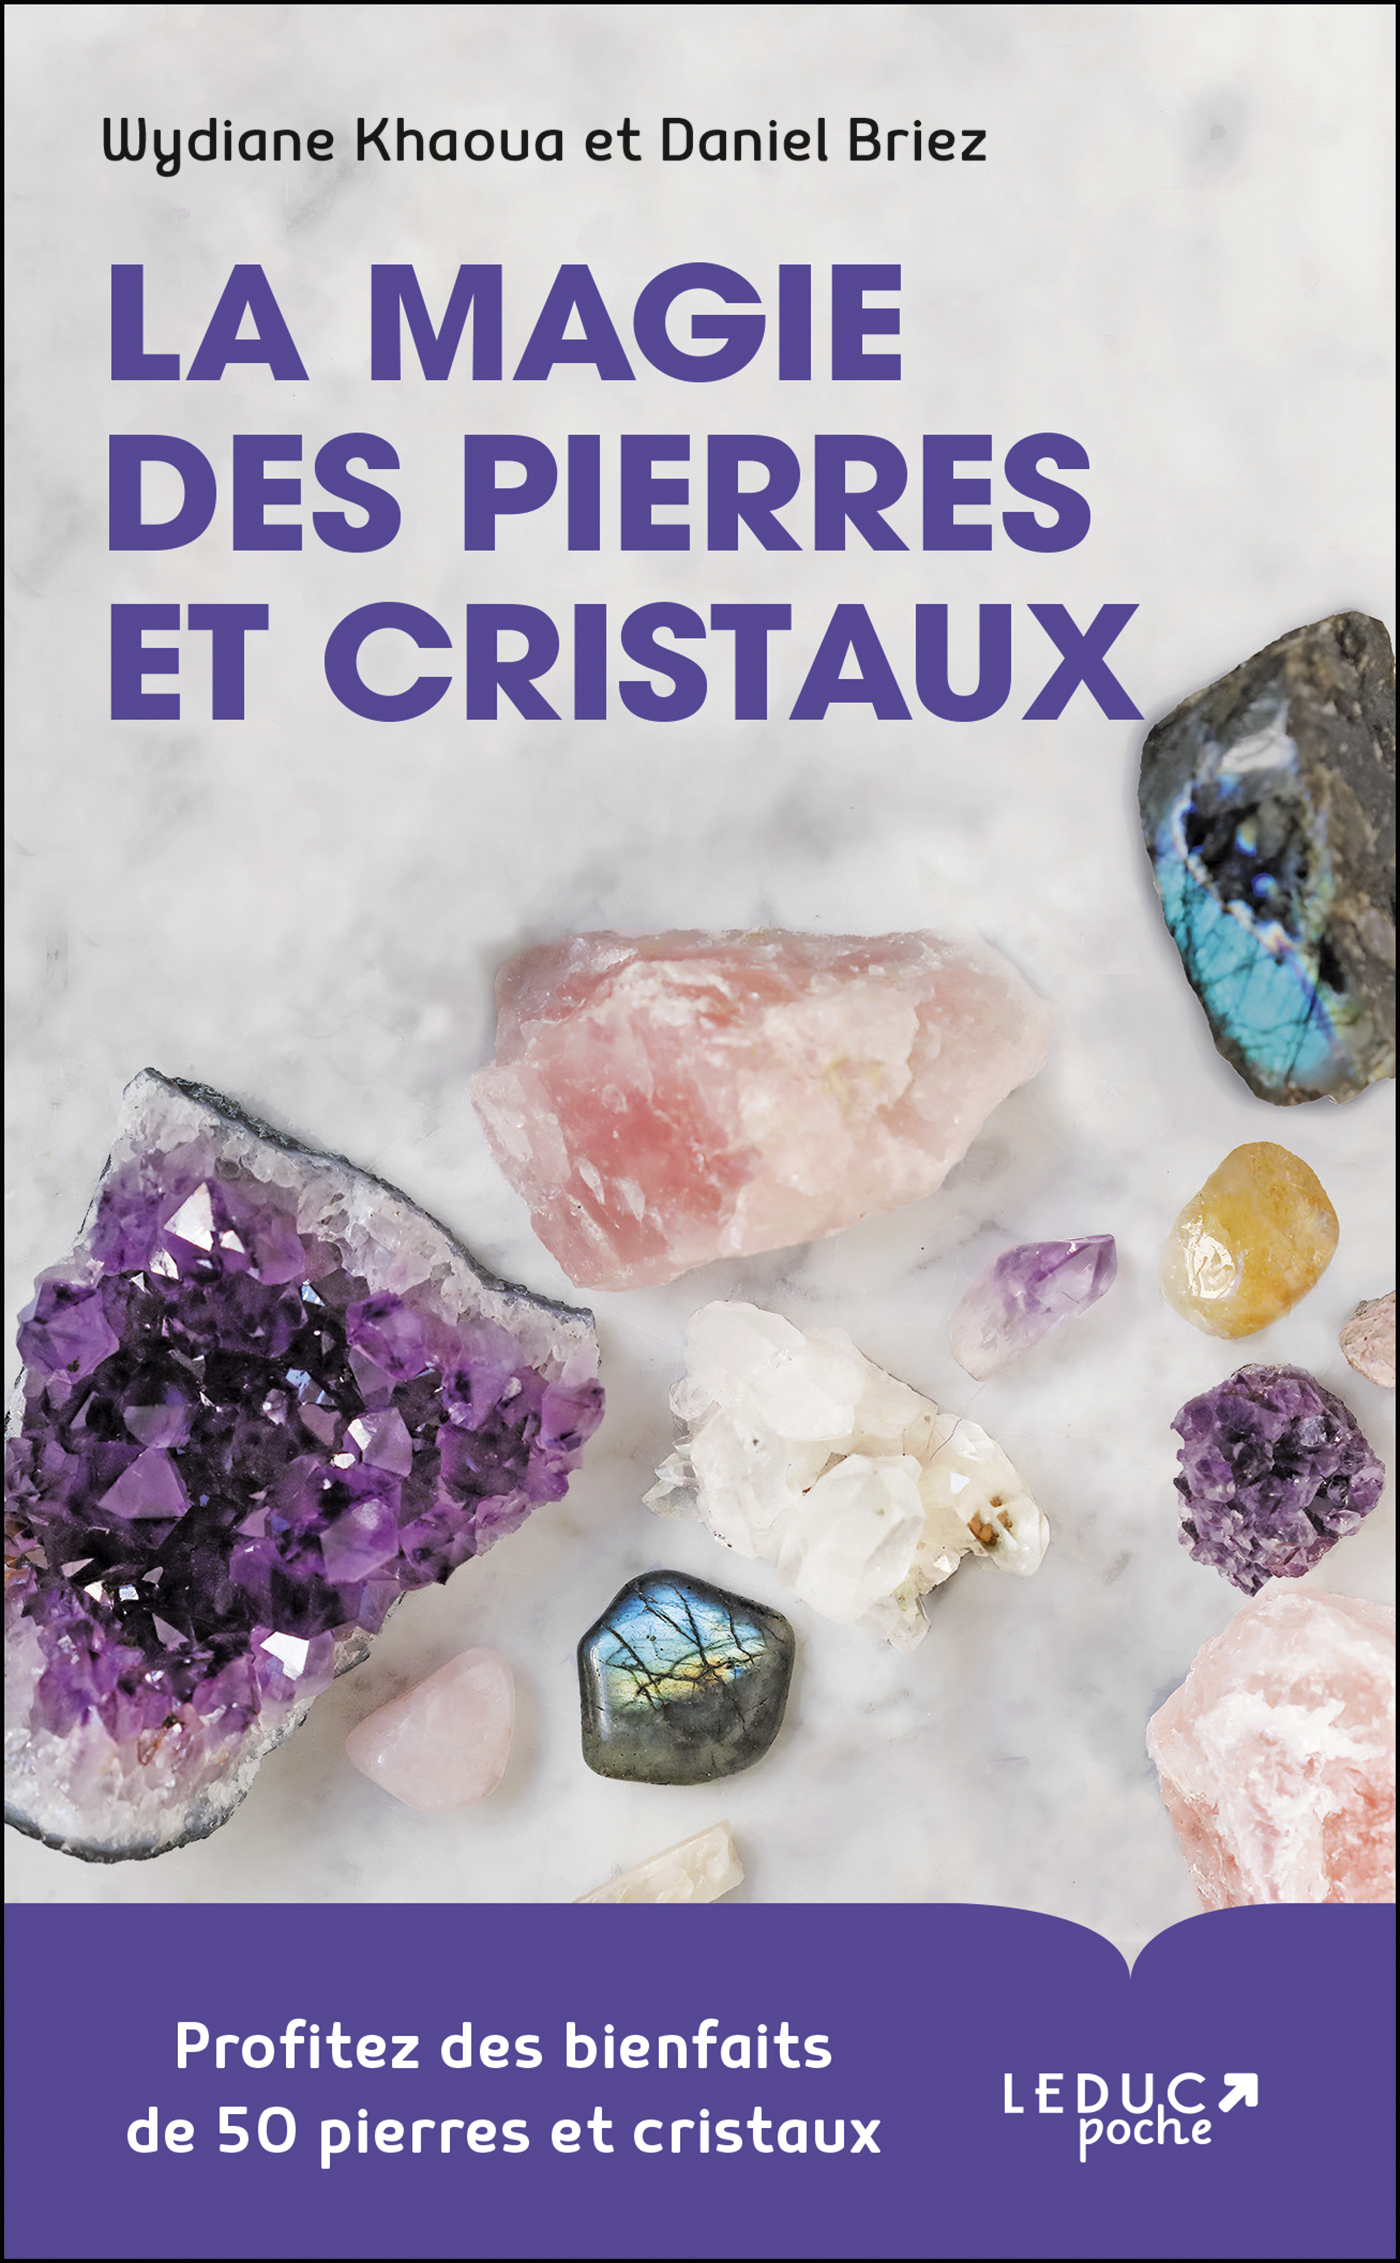 La magie des pierres et cristaux - Profitez des bienfaits de 50 pierres et  cristaux - Wydiane Khaoua, Daniel Briez (EAN13 : 9791028523862)